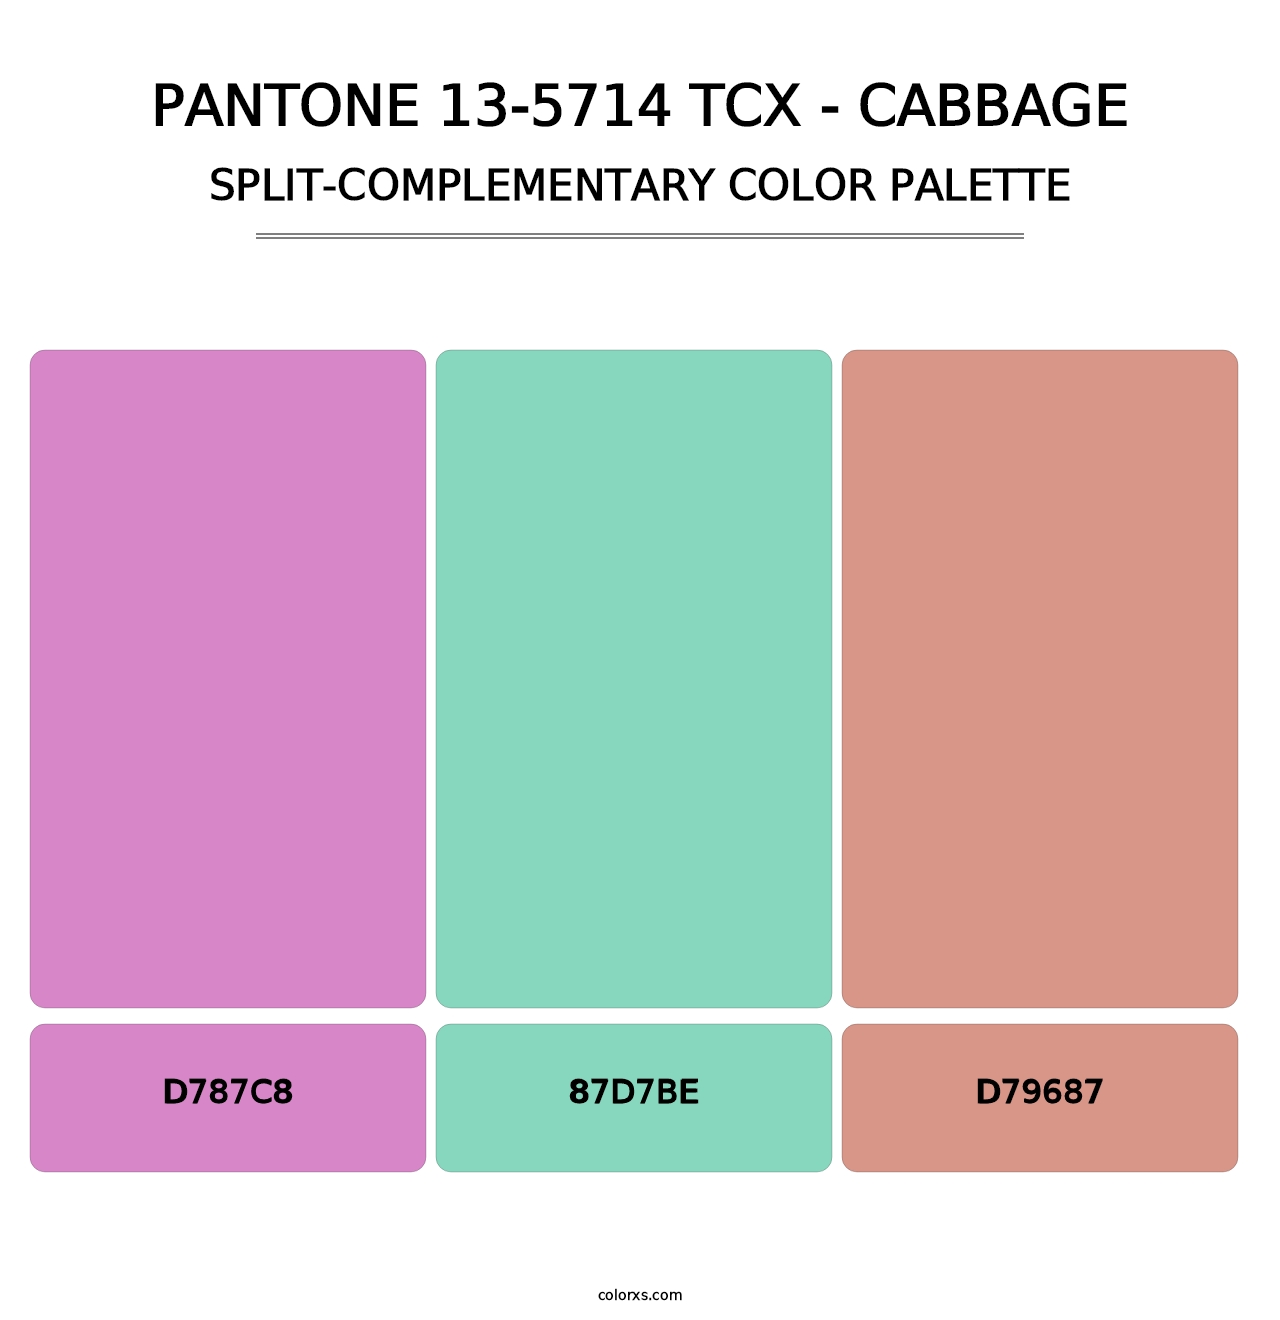 PANTONE 13-5714 TCX - Cabbage - Split-Complementary Color Palette